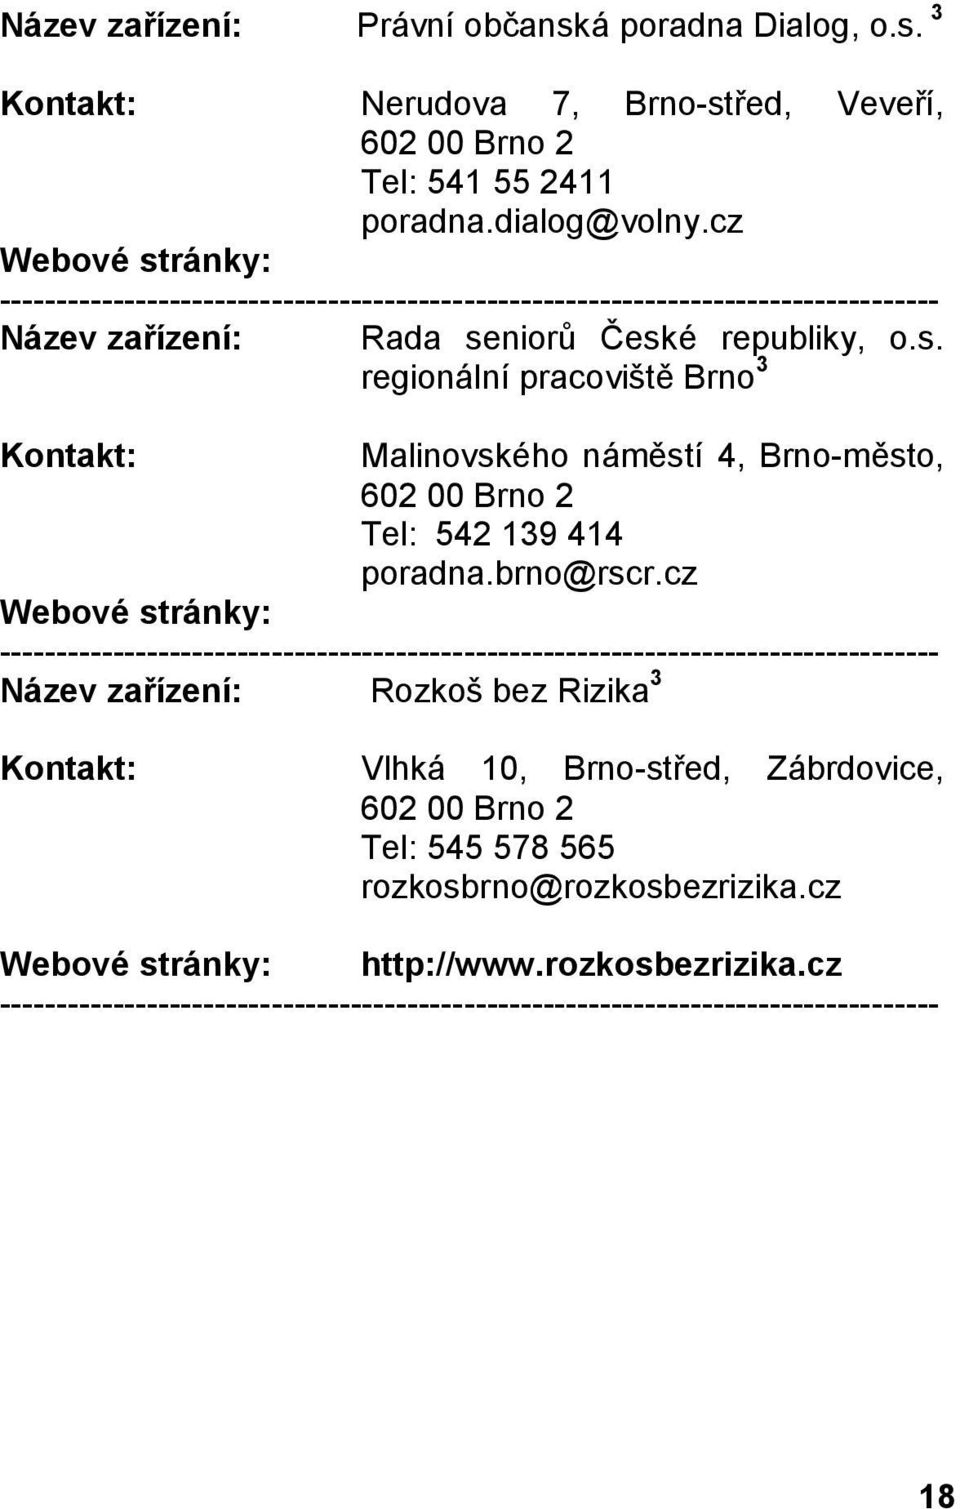 niorů České republiky, o.s. regionální pracoviště Brno 3 Malinovského náměstí 4, Brno-město, 602 00 Brno 2 Tel: 542 139 414 poradna.